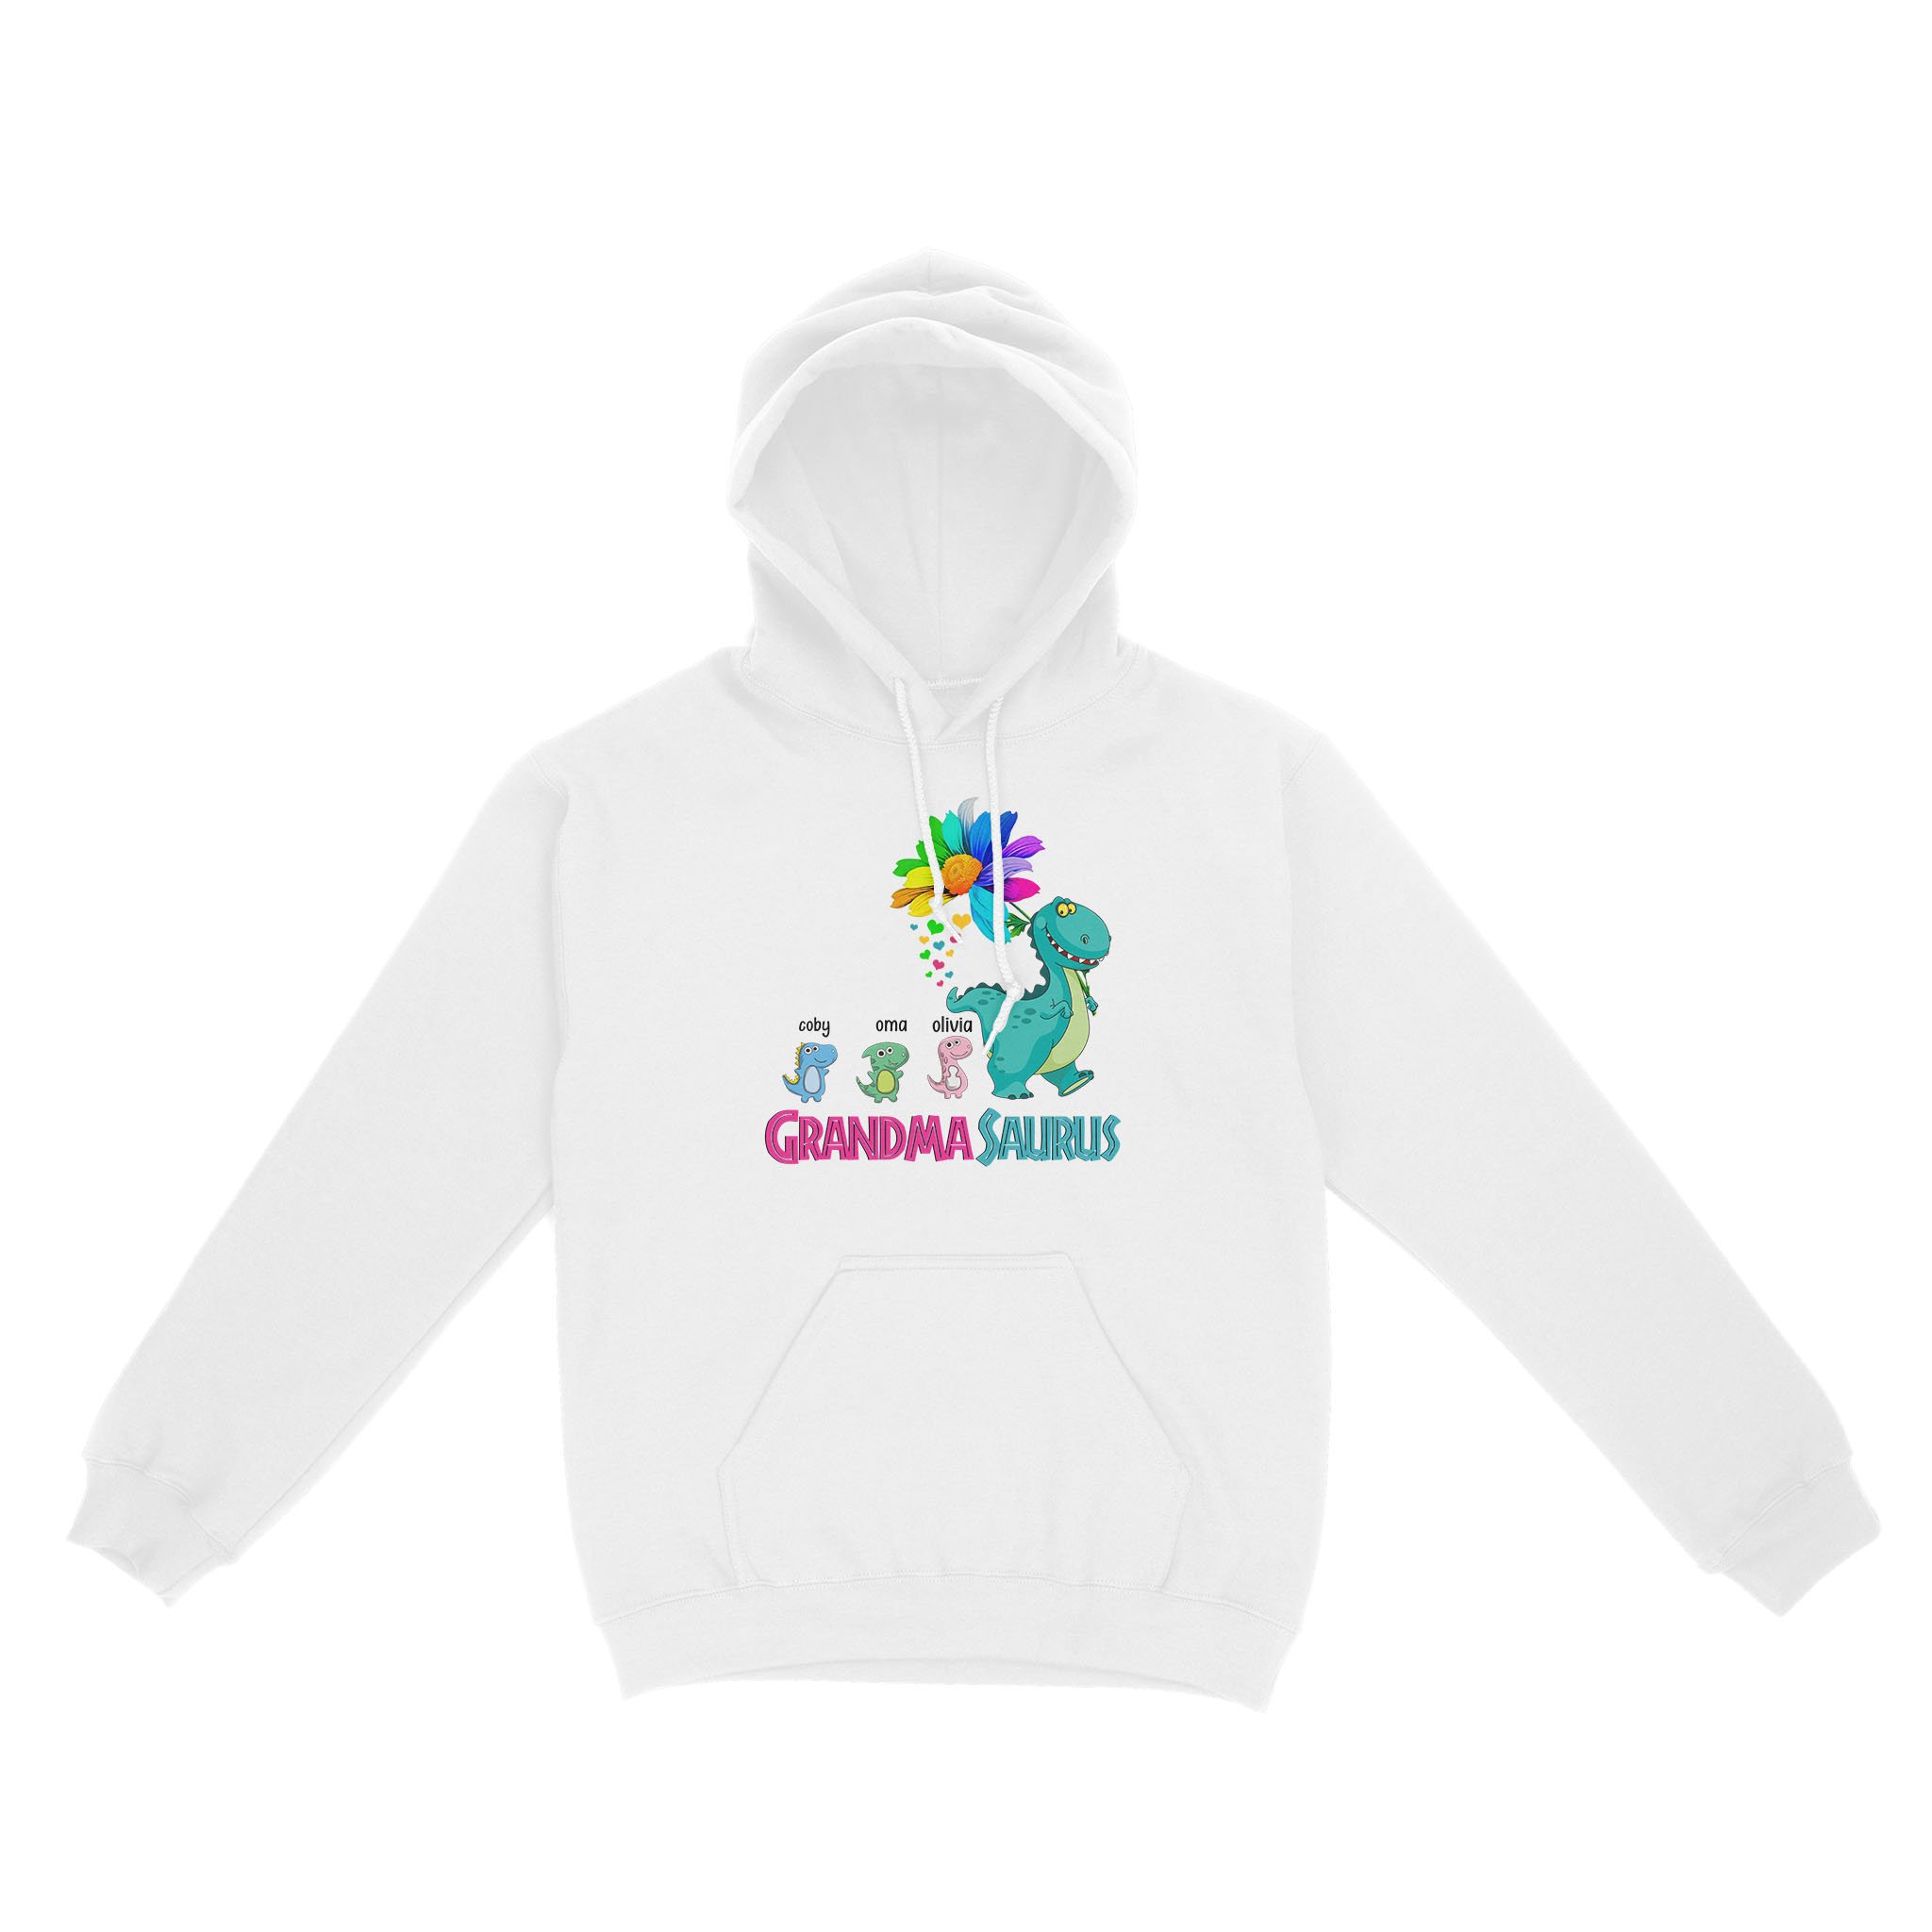 Grandma Shirt, Custom Grandma Saurus Shirt, Grandmasaurus Shirt Gift For Mom, Flower Shirt, Mother’s Day Shirt – Standard Hoodie